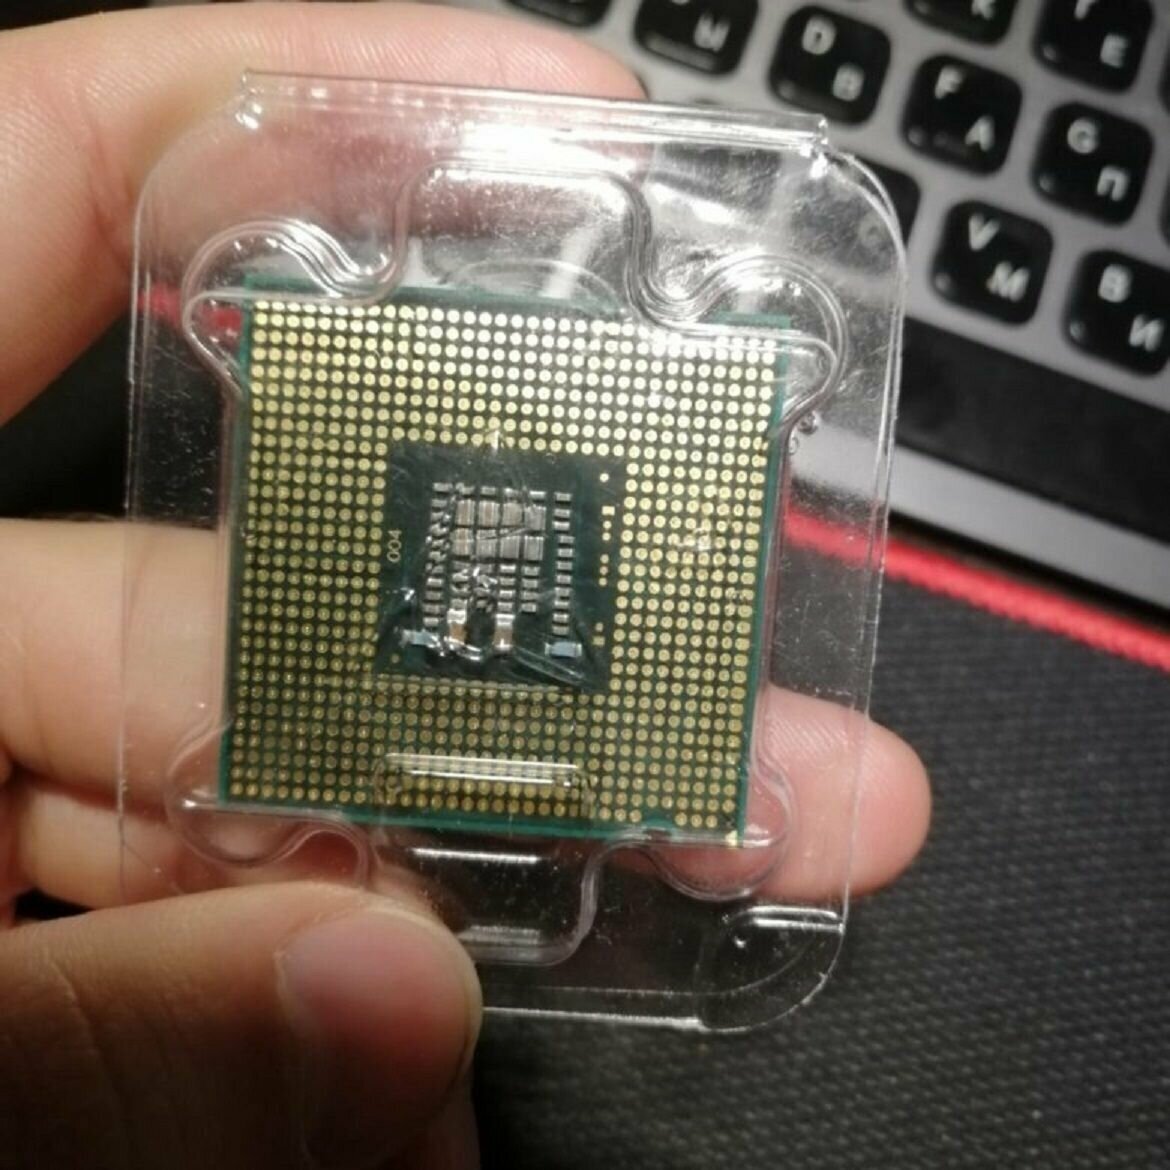 Intel Core 2 Duo E4500 LGA775, 2 x 2200 МГц OEM